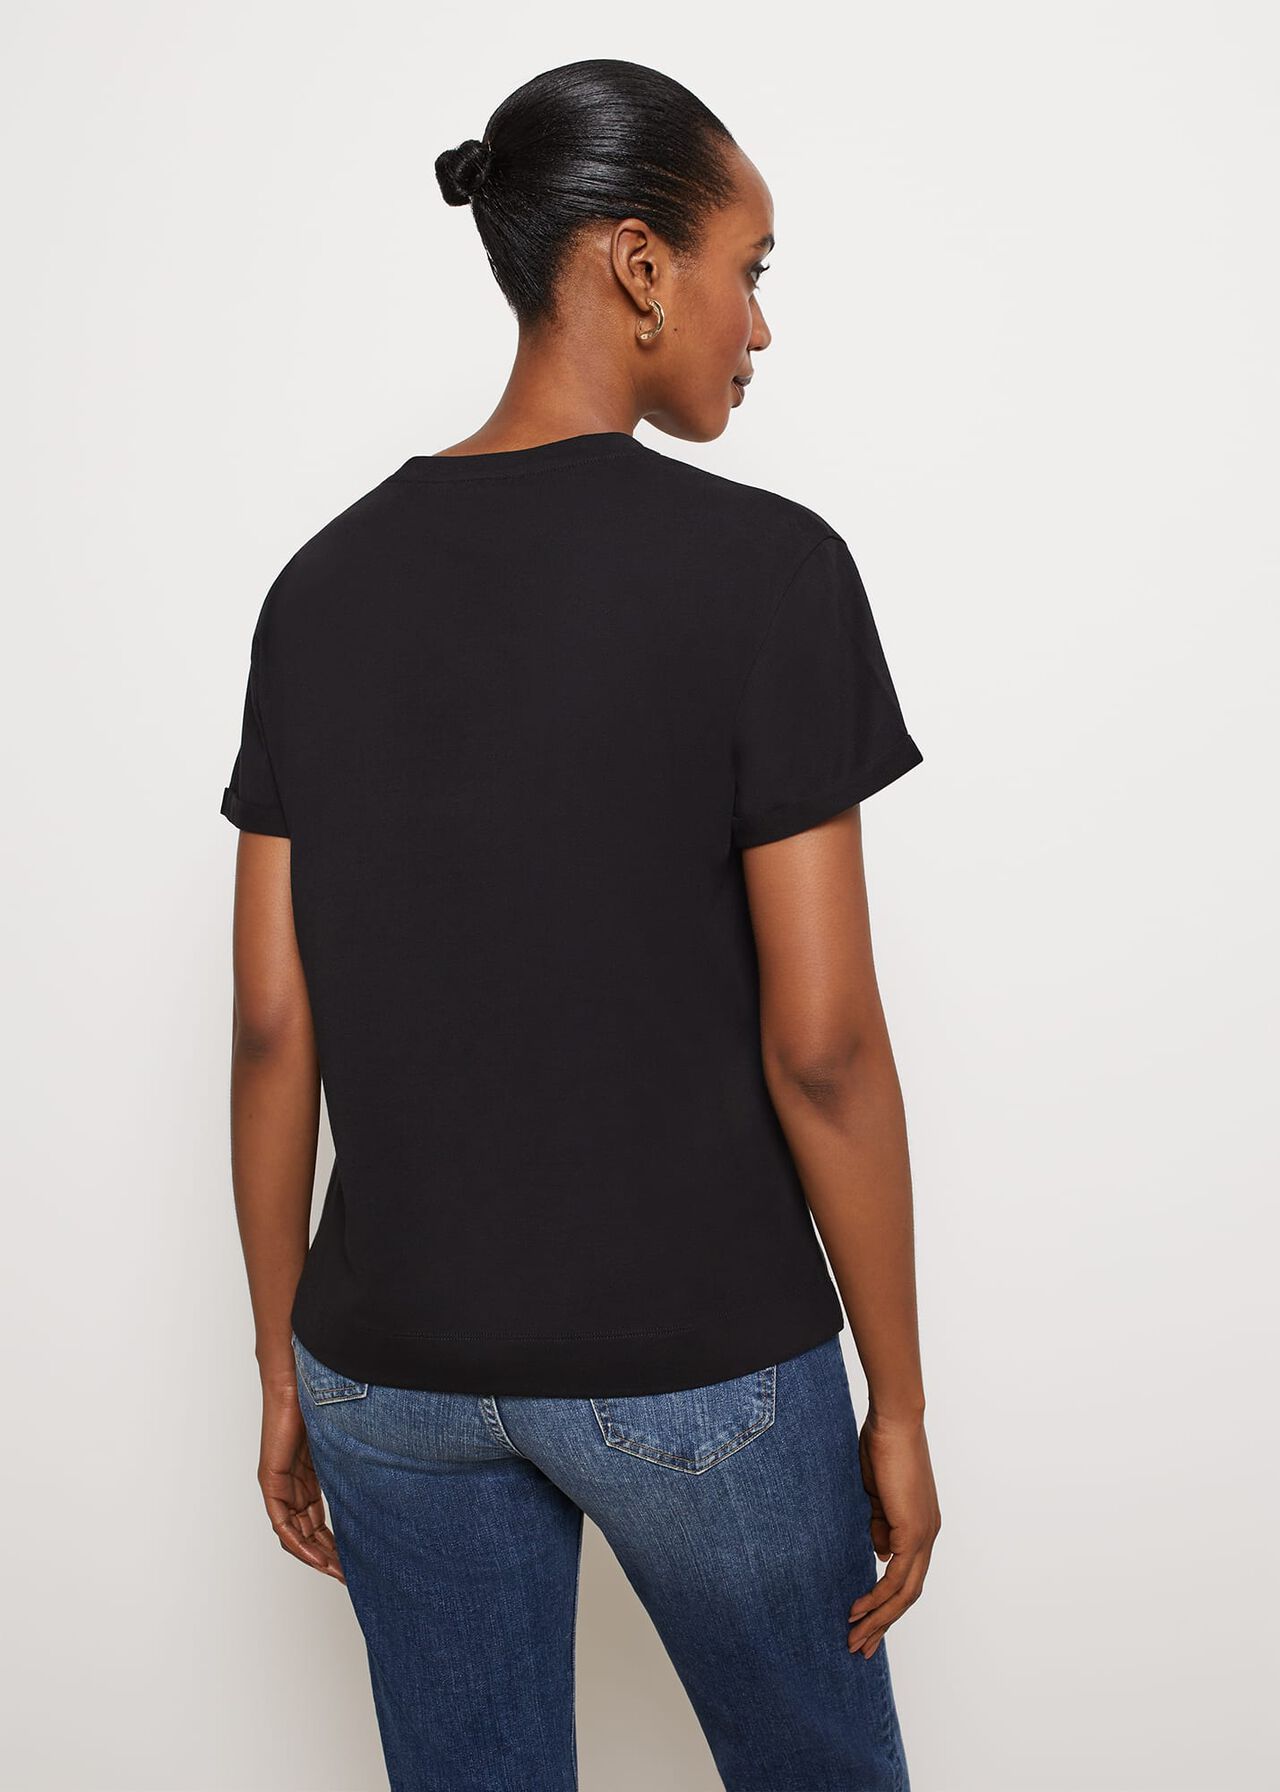 Hatton Cotton T-Shirt, Black, hi-res